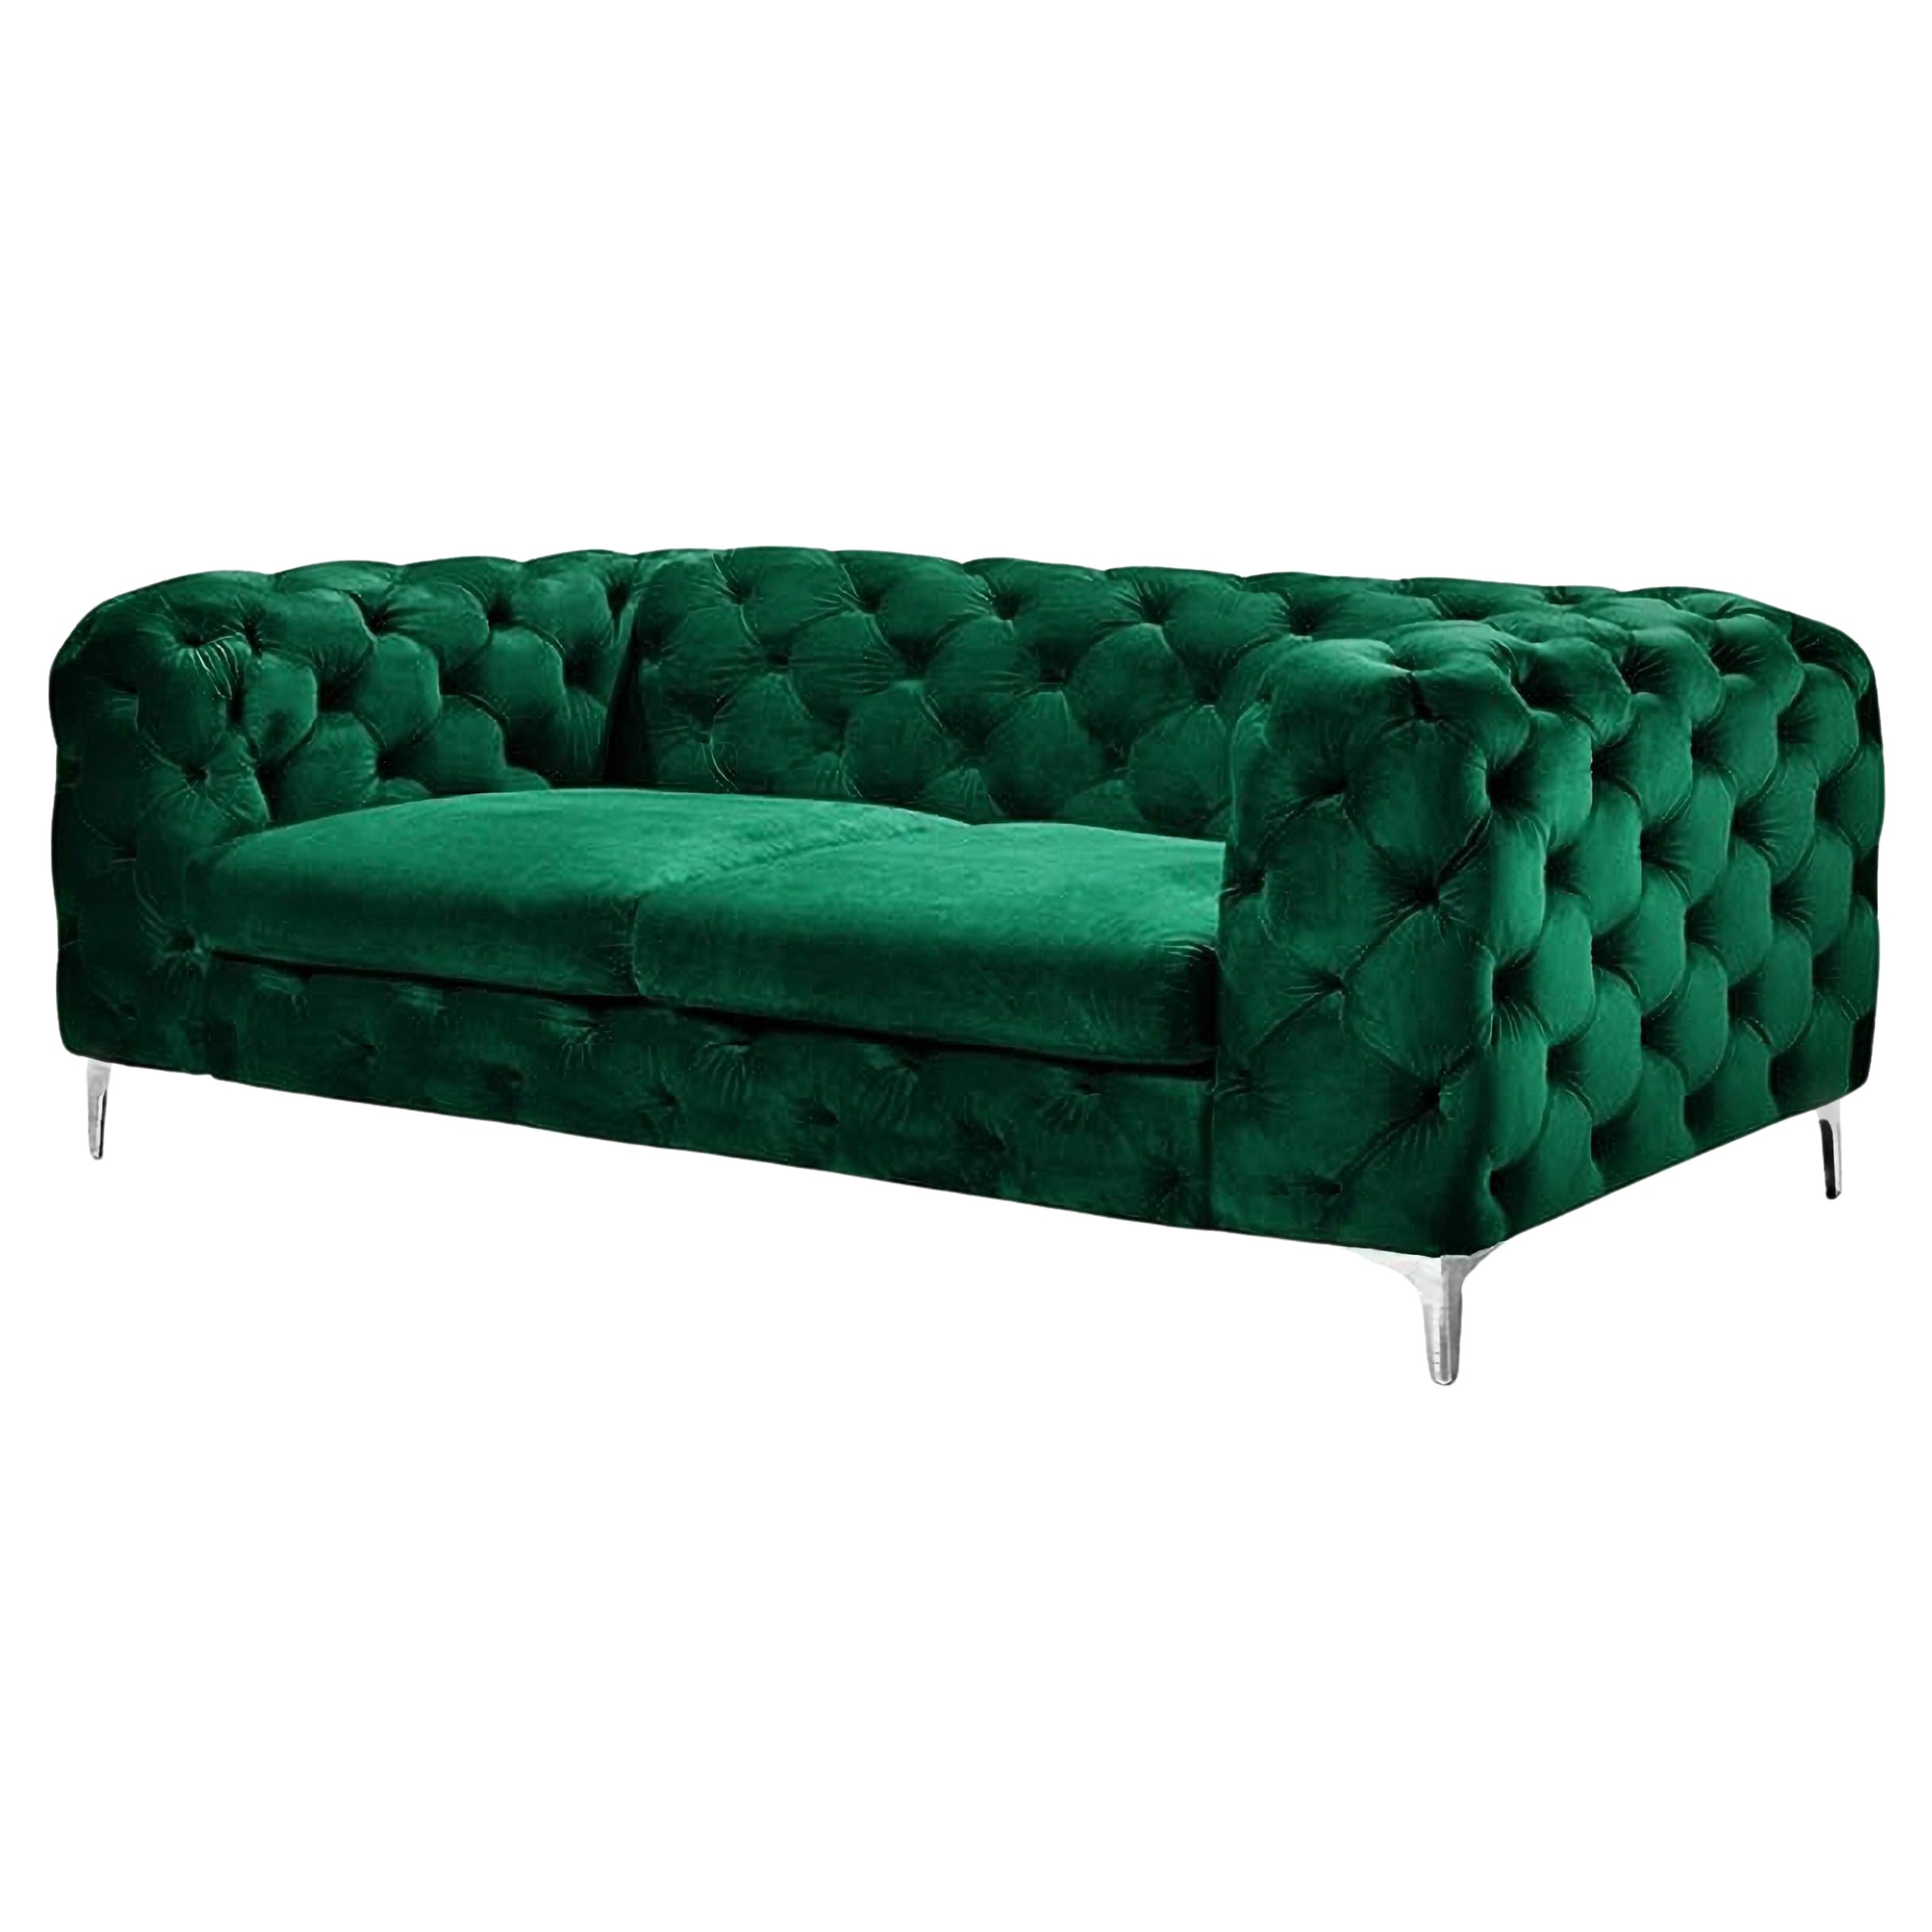 Chester 2 Seater Sofa, Green Velvet New For Sale